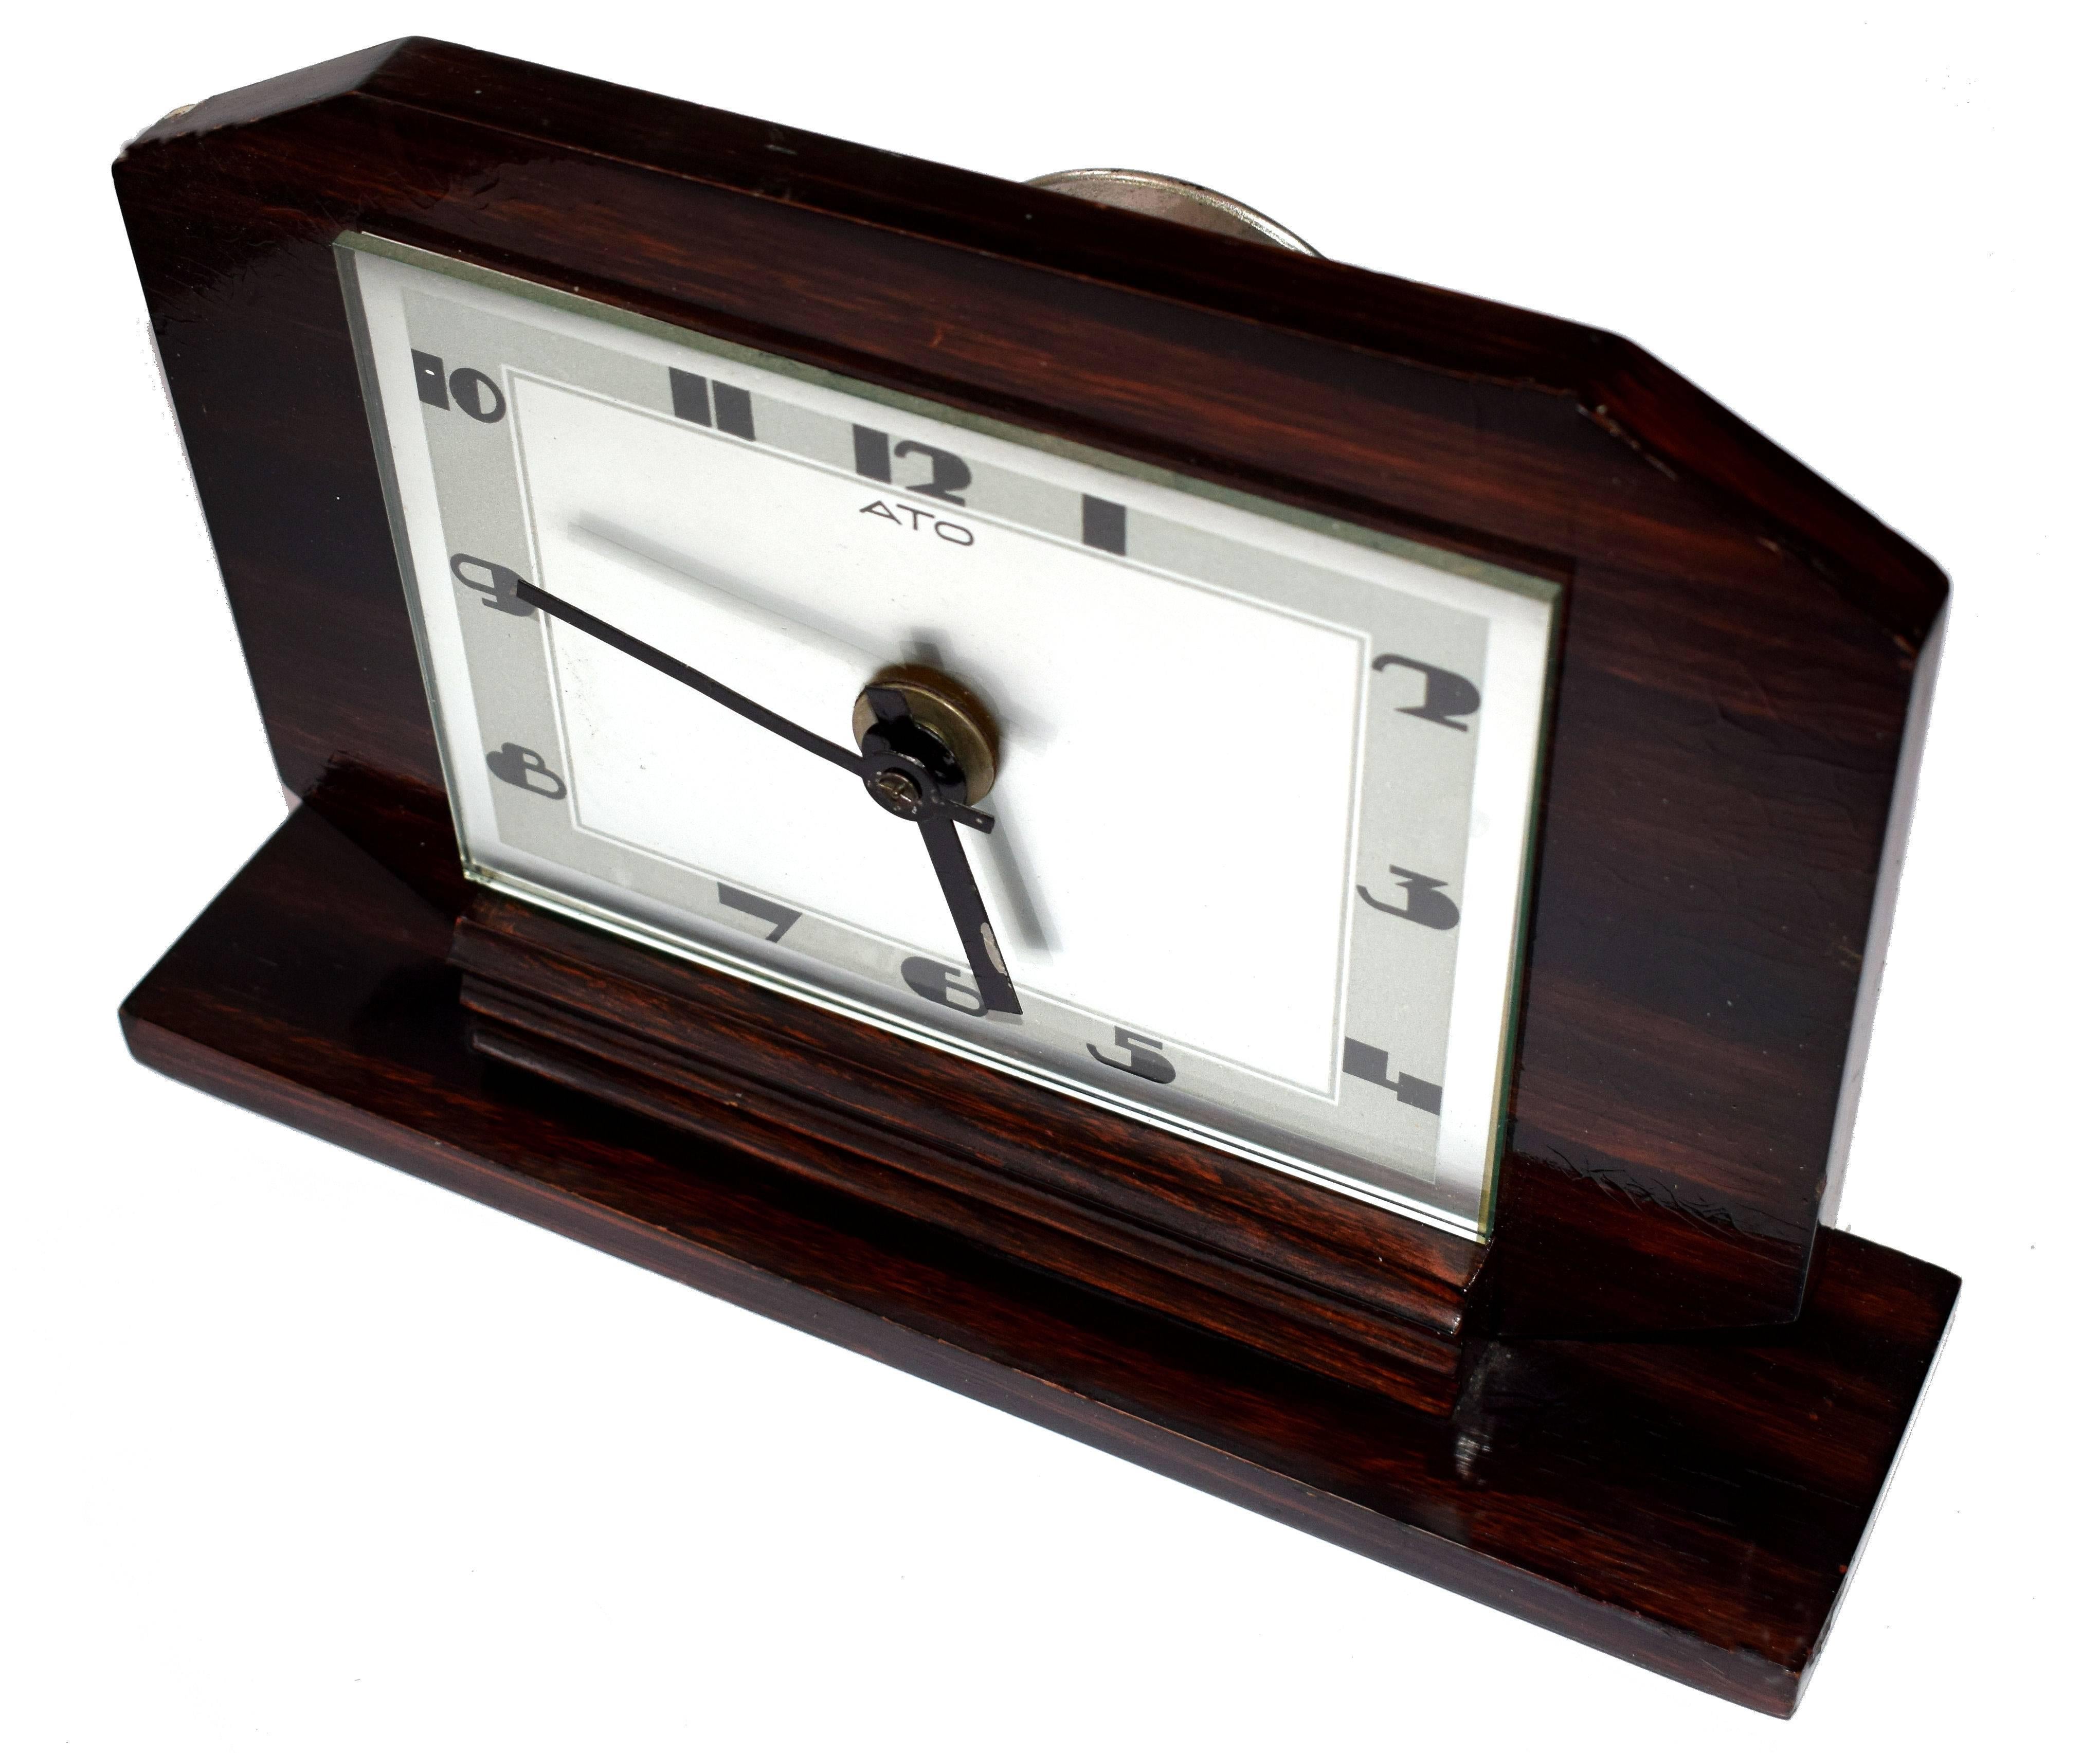 Superbe horloge Art Déco des années 30 par les horlogers français ATO . Le boîtier en bois de Macassar contrastant avec le cadran argenté et les chiffres Art déco très stylisés est tout simplement impressionnant, une horloge qui ne peut être